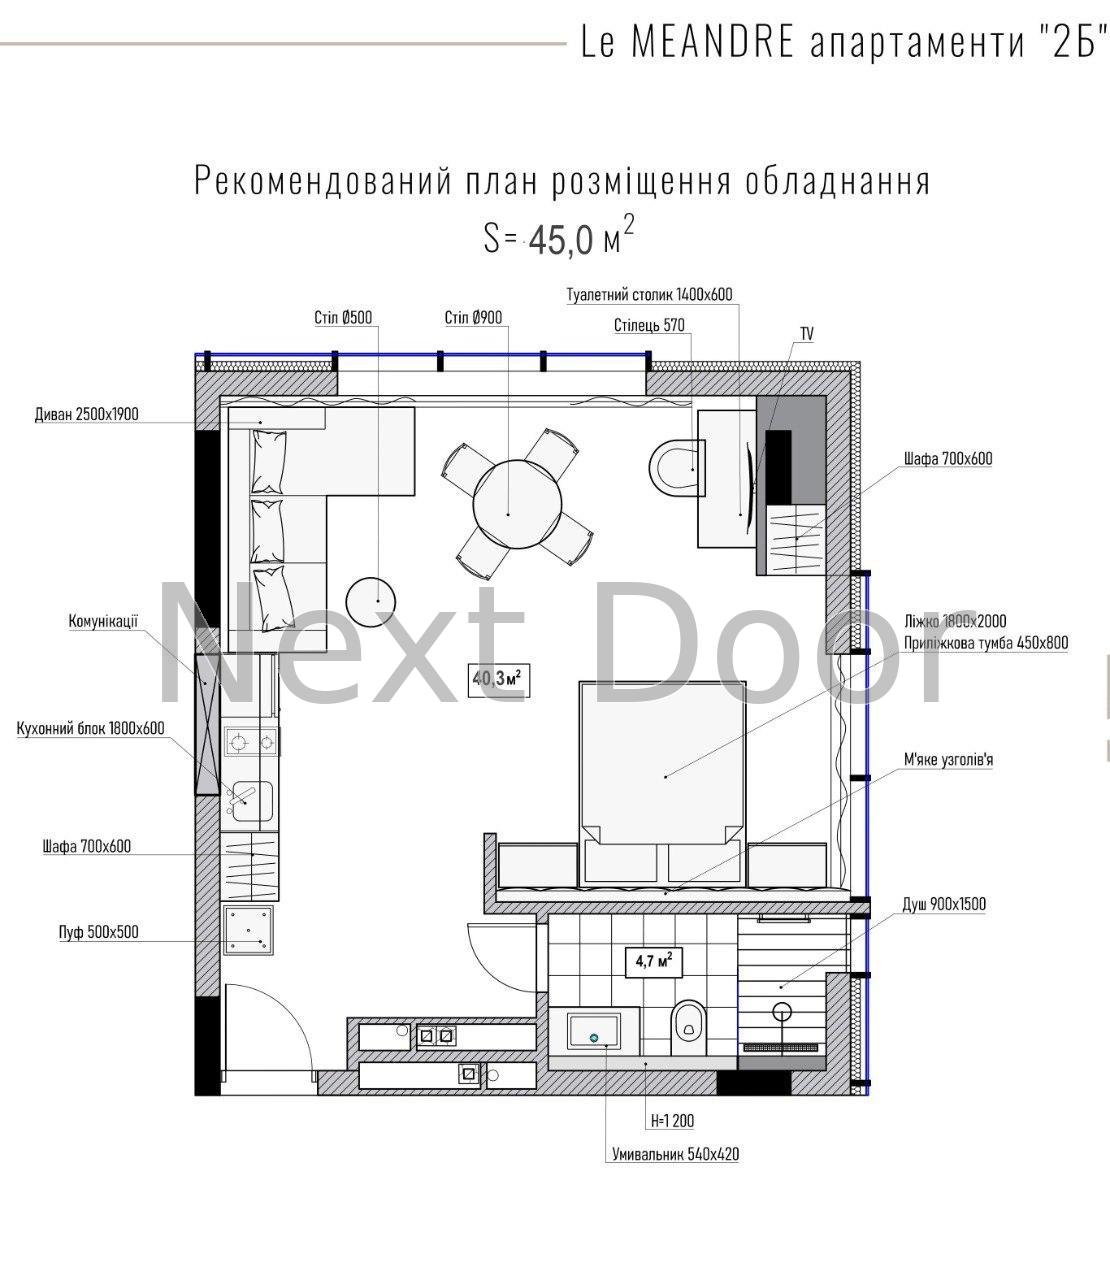 Продаж квартир Поляниця